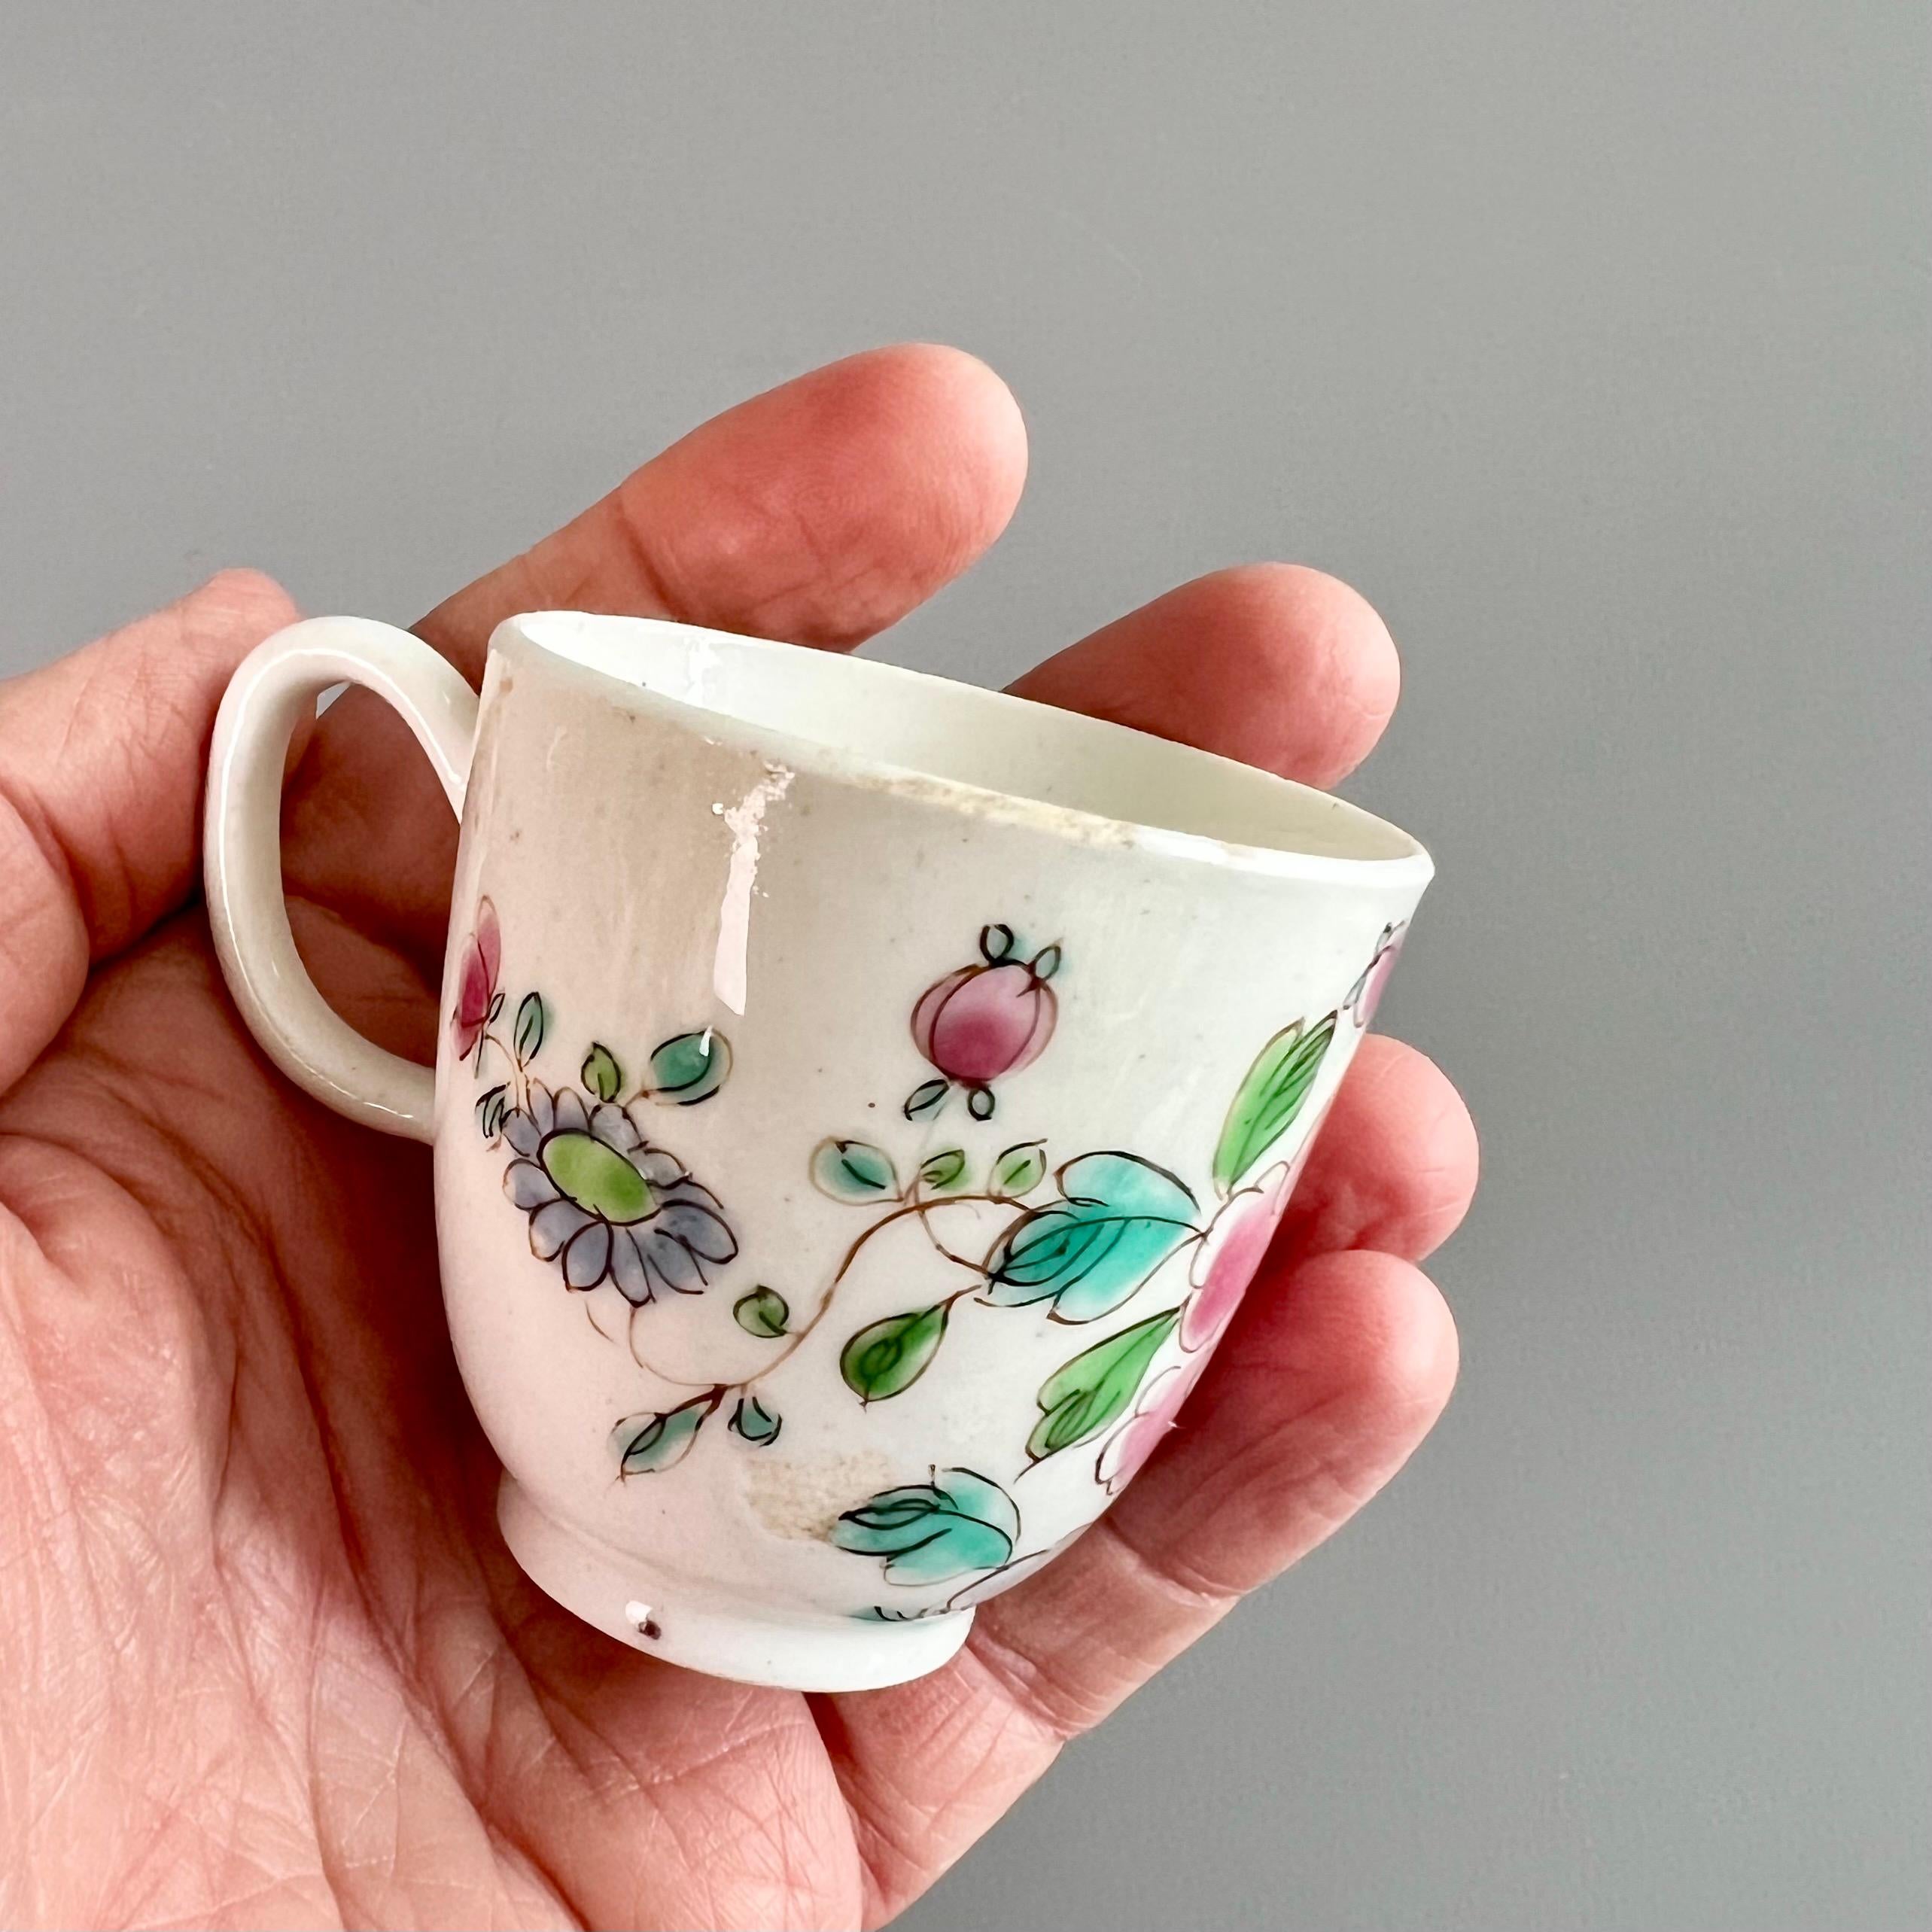 Dies ist eine sehr charmante verwaiste Kaffeetasse, die um 1755 von der Bow Porcelain Factory hergestellt wurde. Die Tasse ist mit einem chinesischen Pfingstrosenmuster verziert. Diese Tasse wäre Teil eines großen Teeservices gewesen, und die